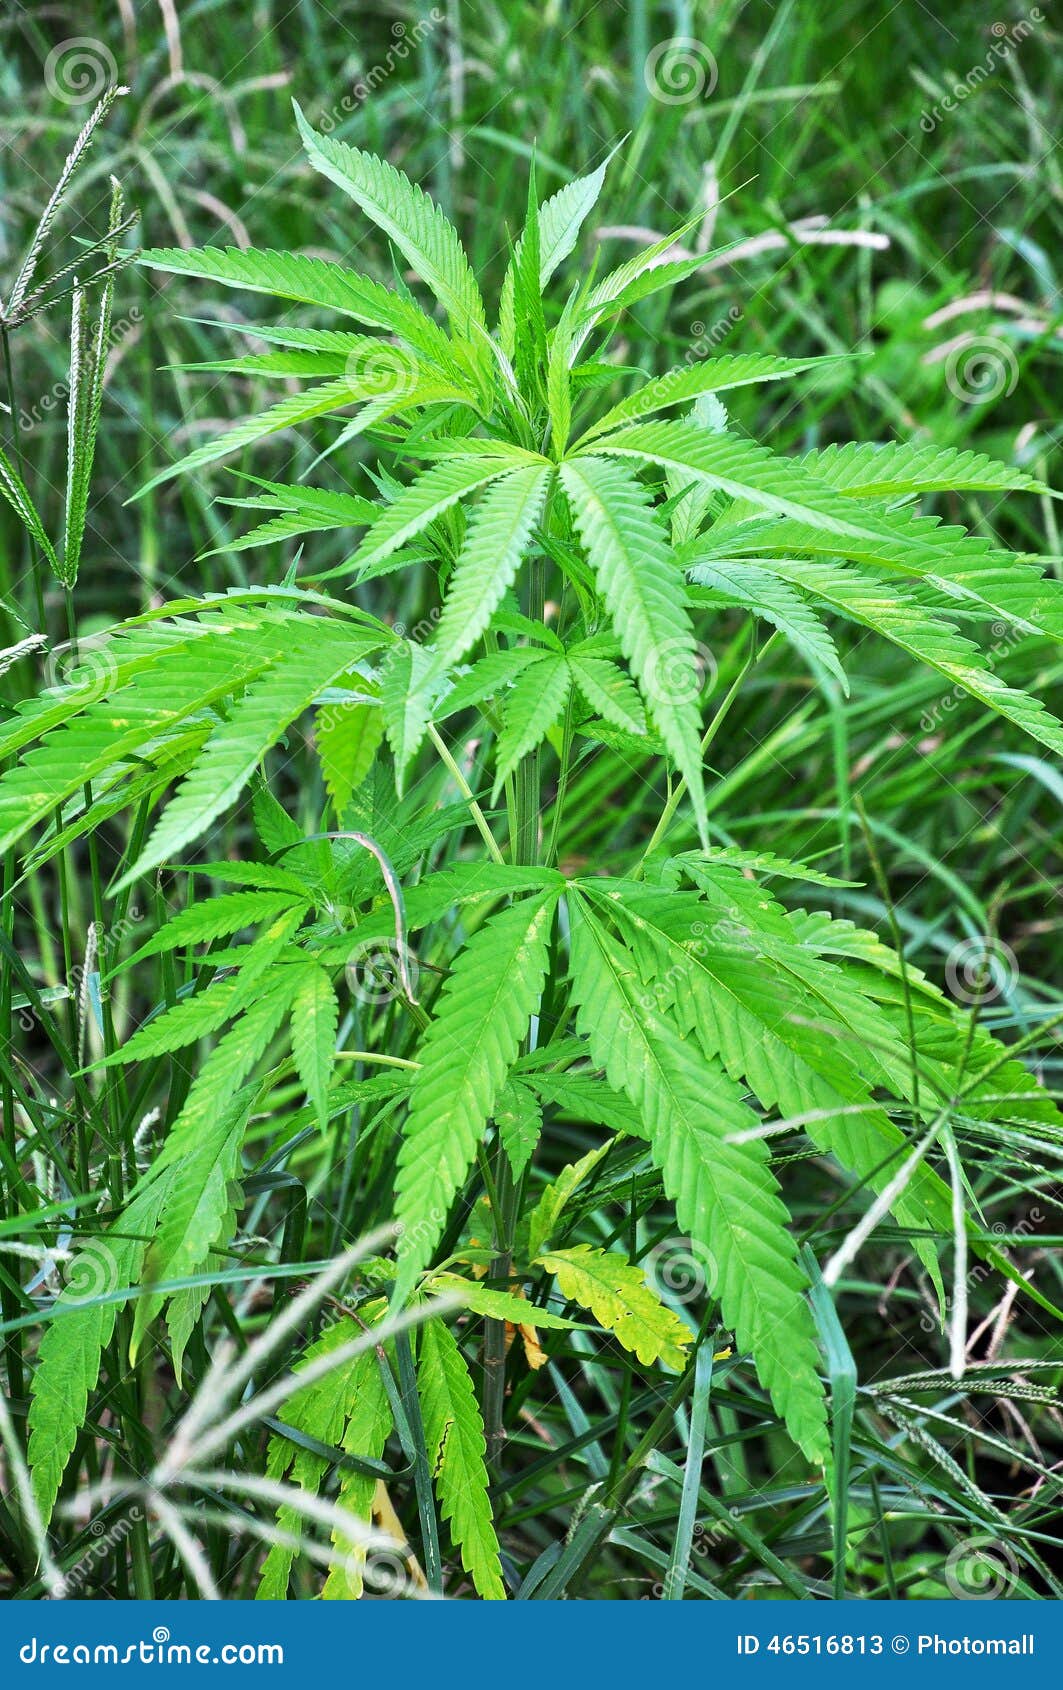 wild-hemp-plant-grass-wild-cannabis-46516813.jpg